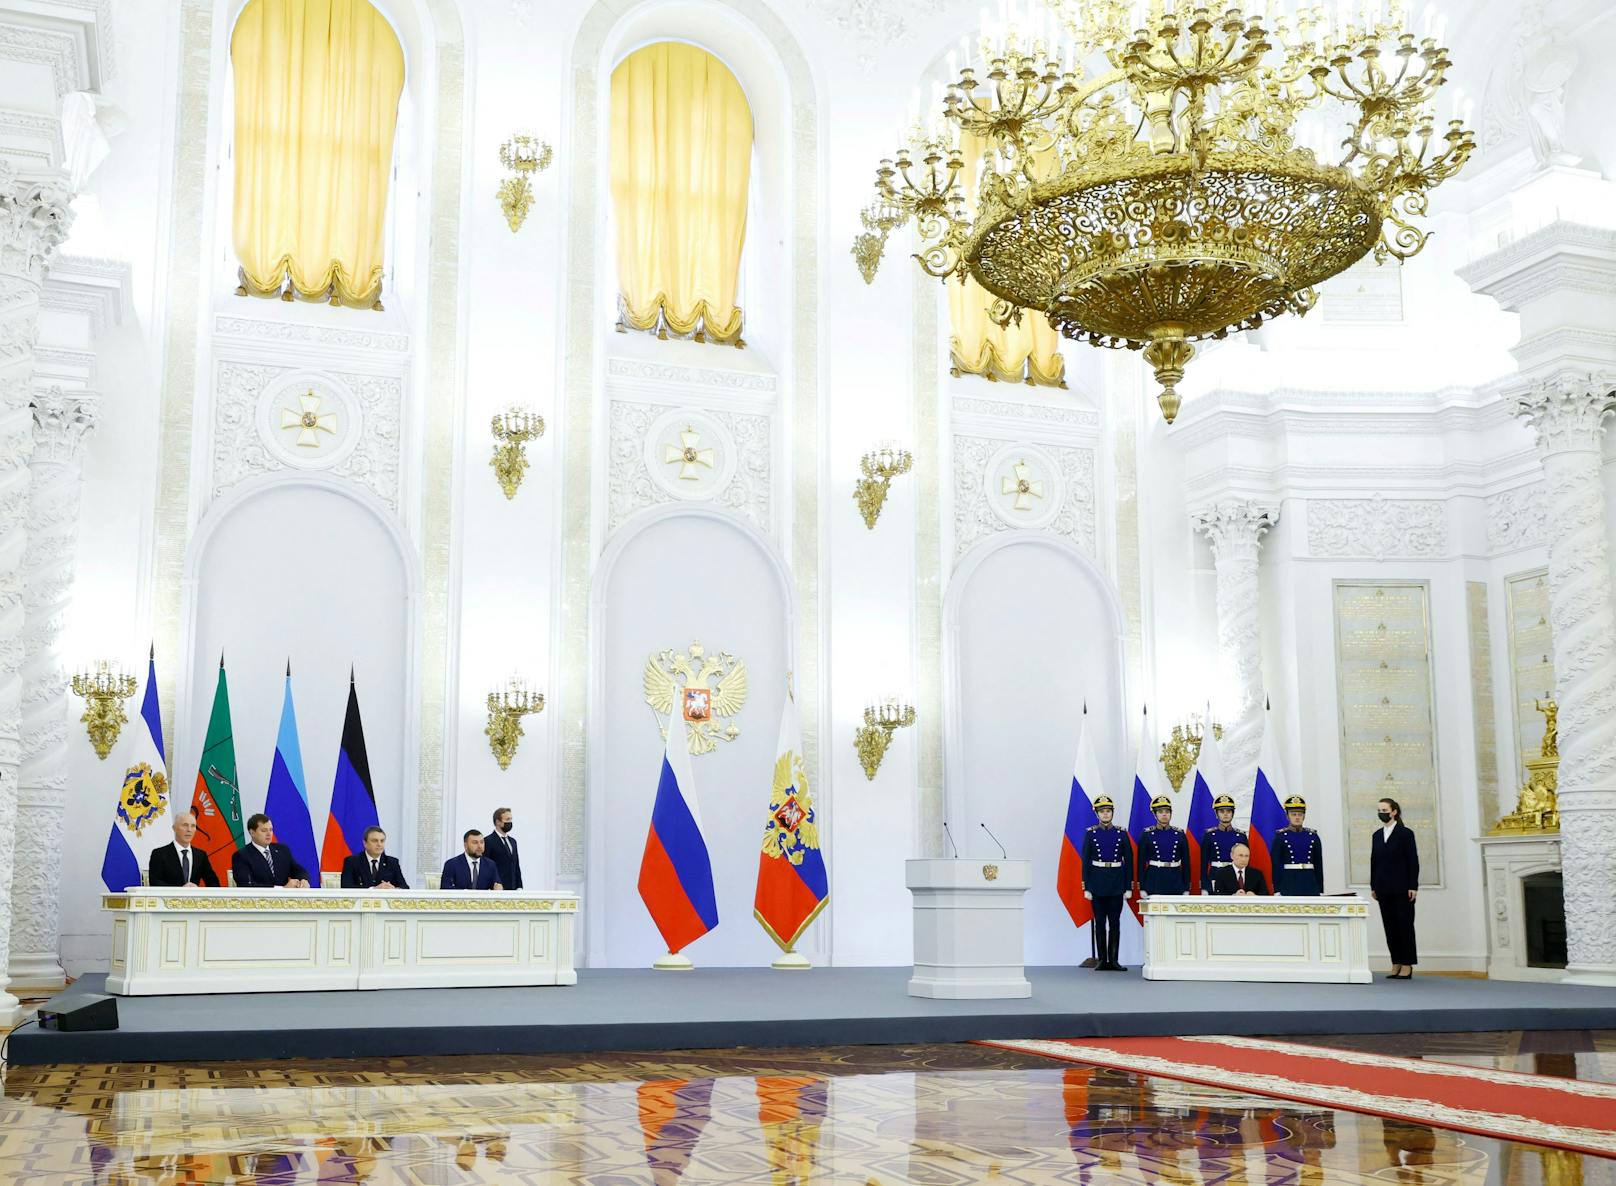 Ebenfalls anwesend im Kreml-Palast:&nbsp;Denis Pushilin, Leonid Pasechnik, Vladimir Saldo, Yevgeny Balitsky.